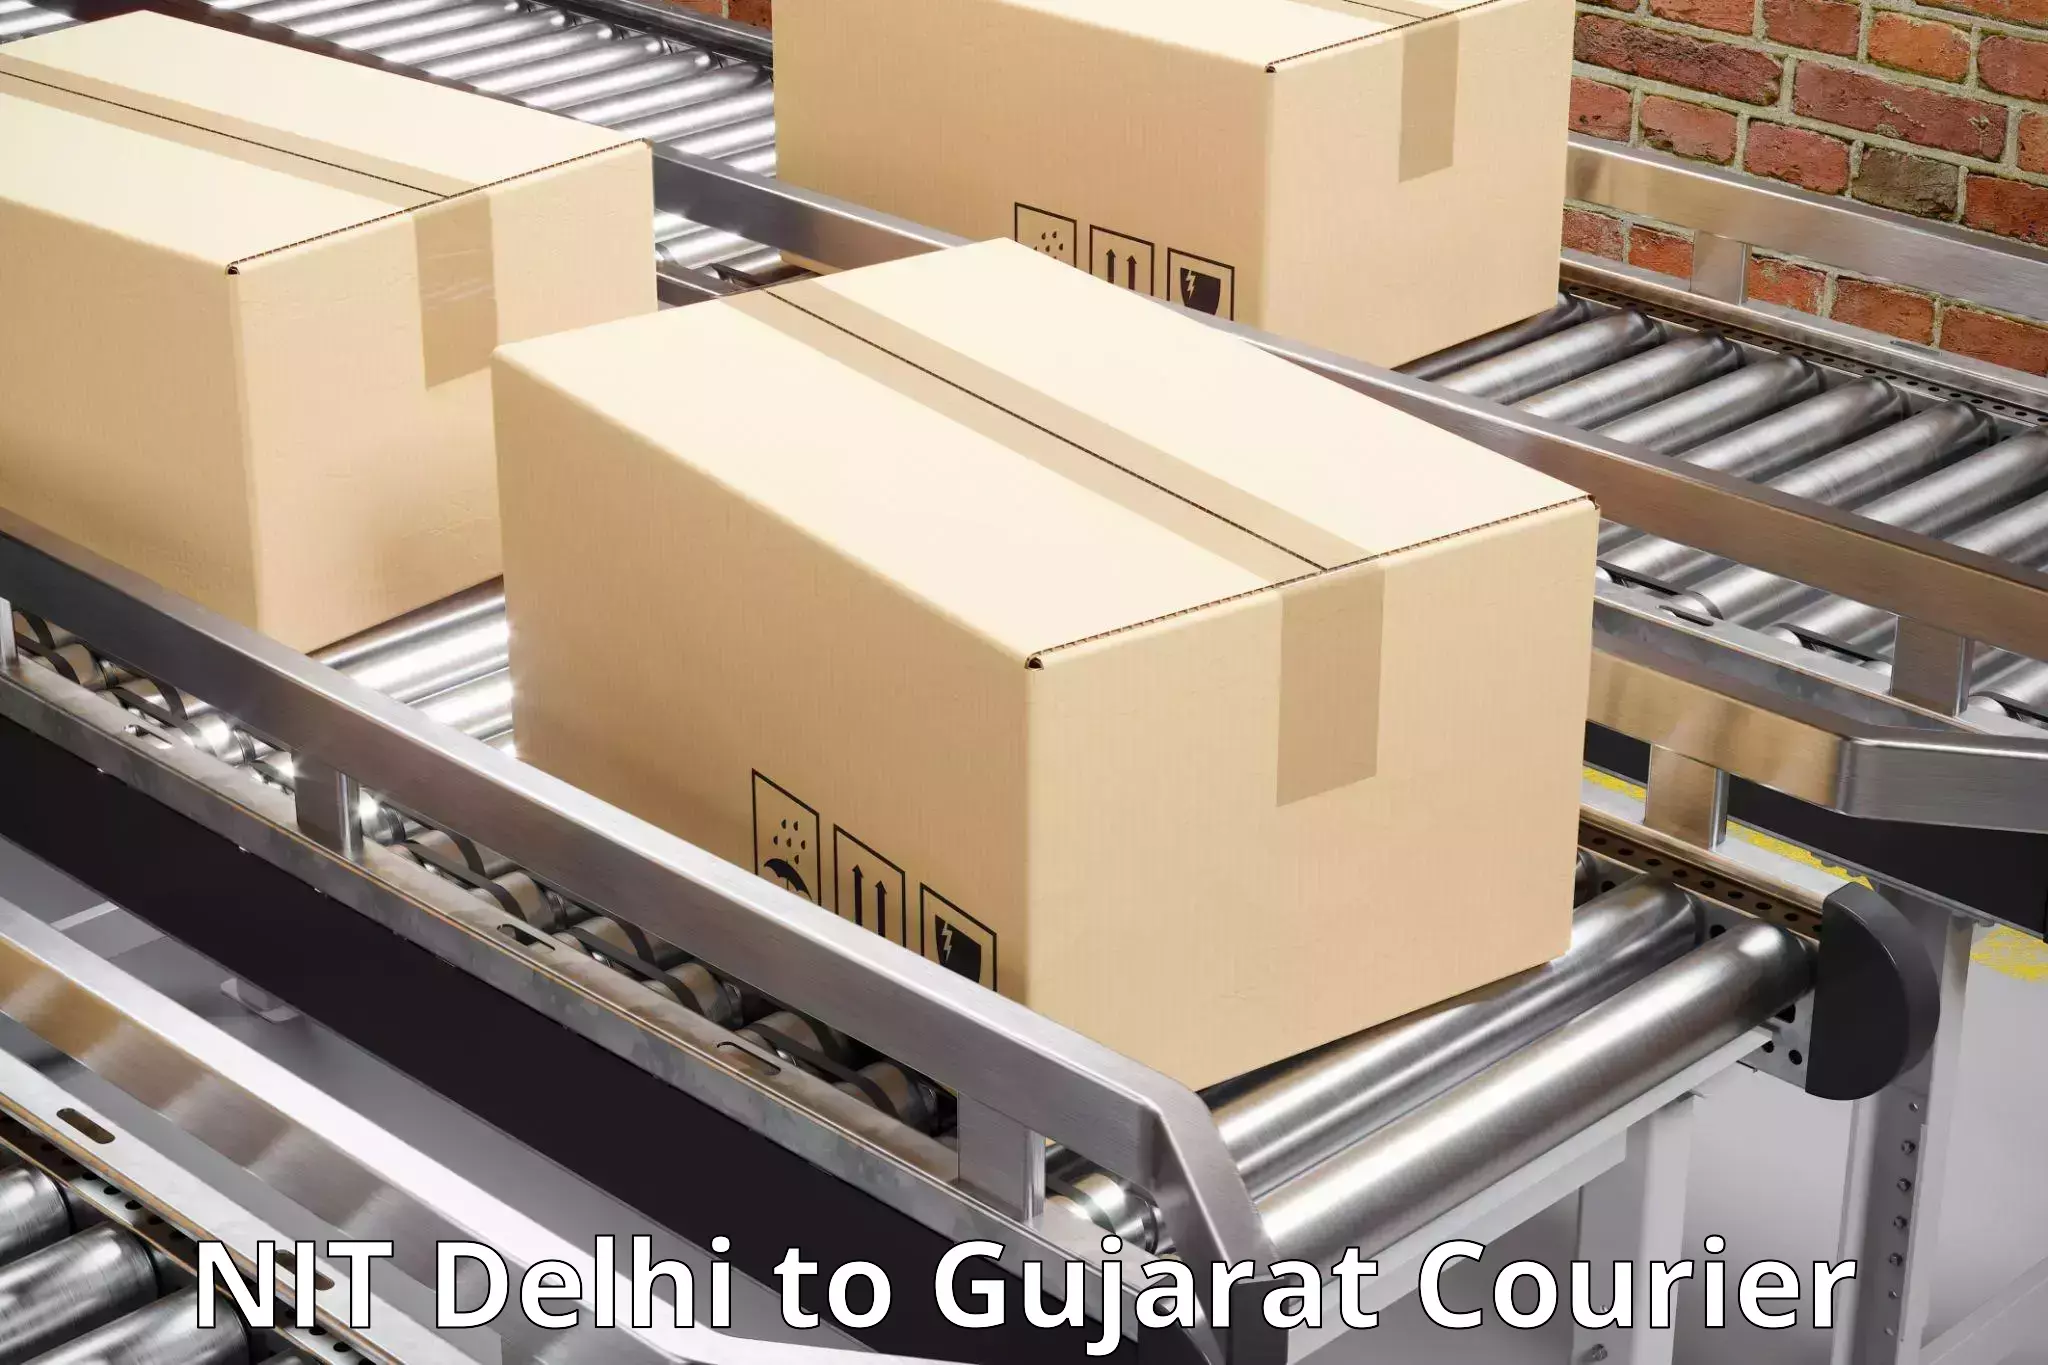 Door-to-door freight service NIT Delhi to Gujarat